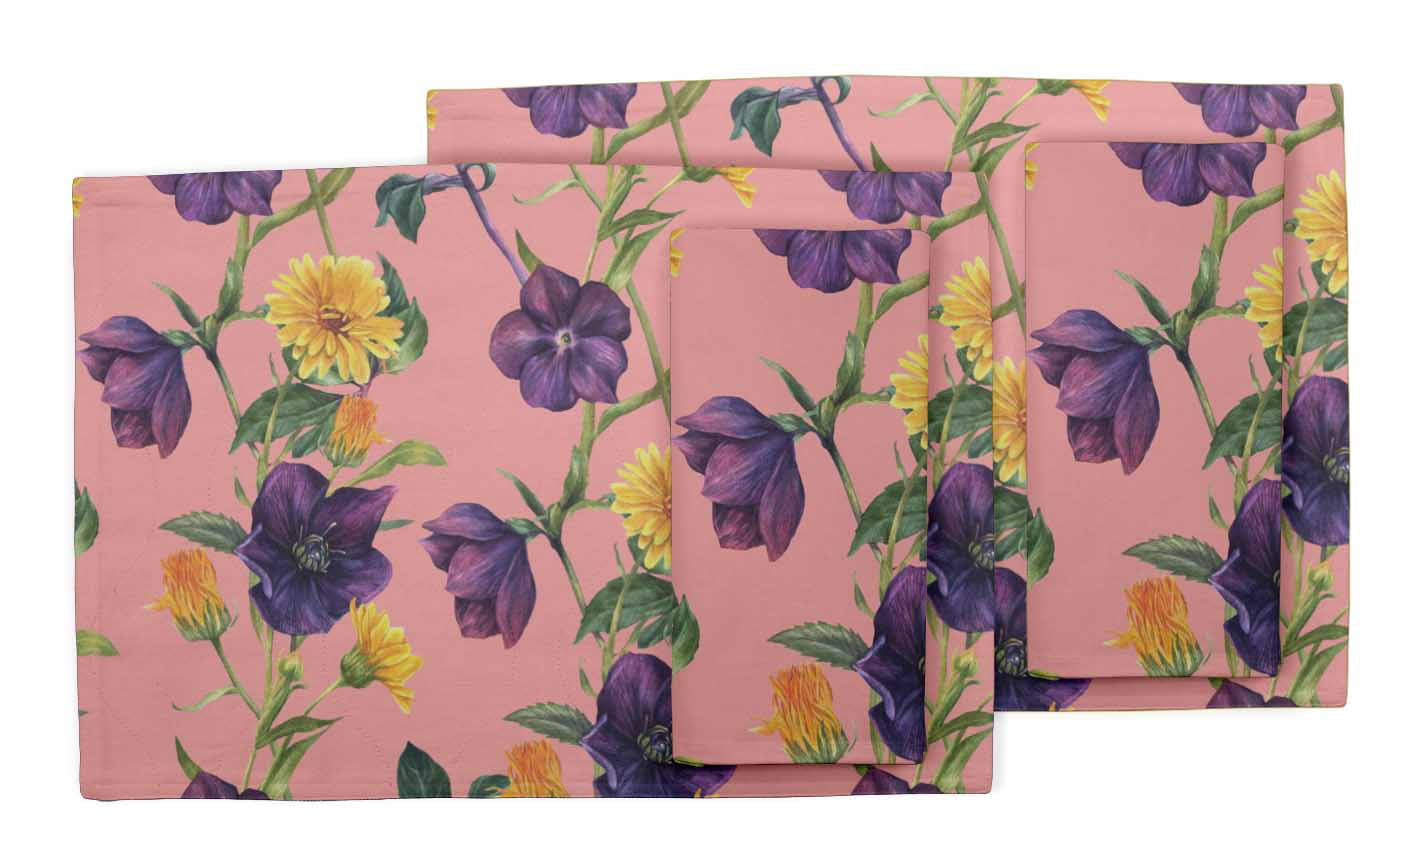 Details about   S4Sassy Amber Flush & Clematis Floral RoomTablemats With Napkins set-FL-62D 